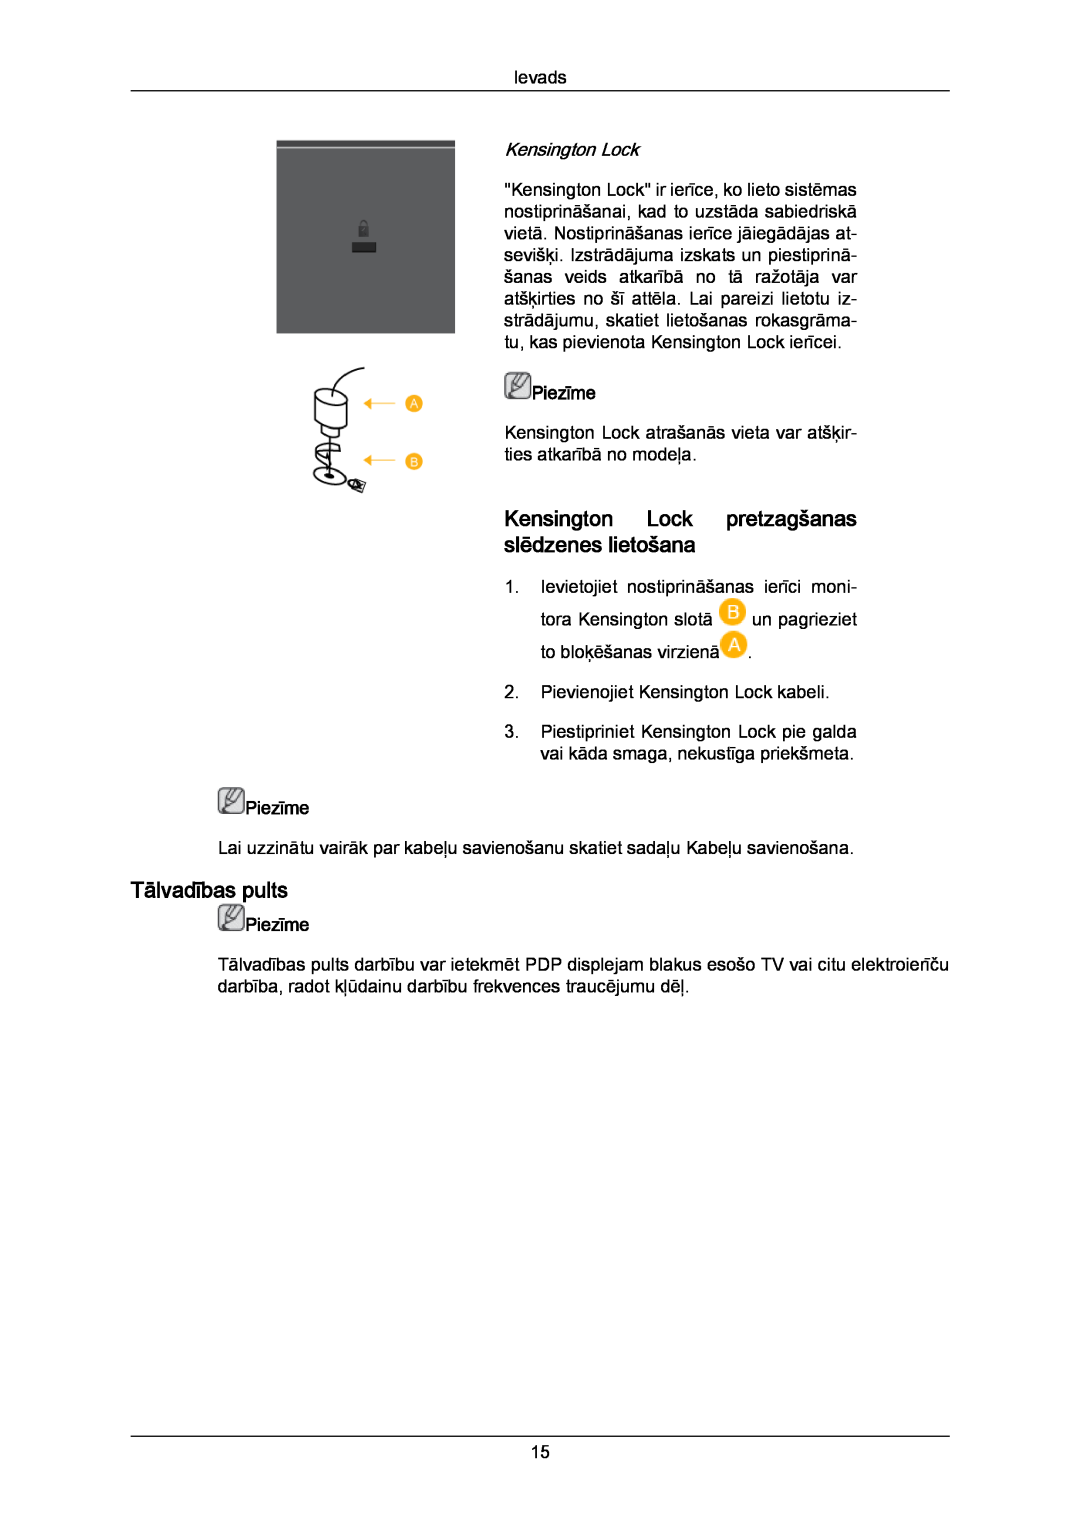 Samsung PH63KPFLBF/EN, PH50KPPLBF/EN manual Kensington Lock pretzagšanas slēdzenes lietošana, Tālvadības pults, Piezīme 